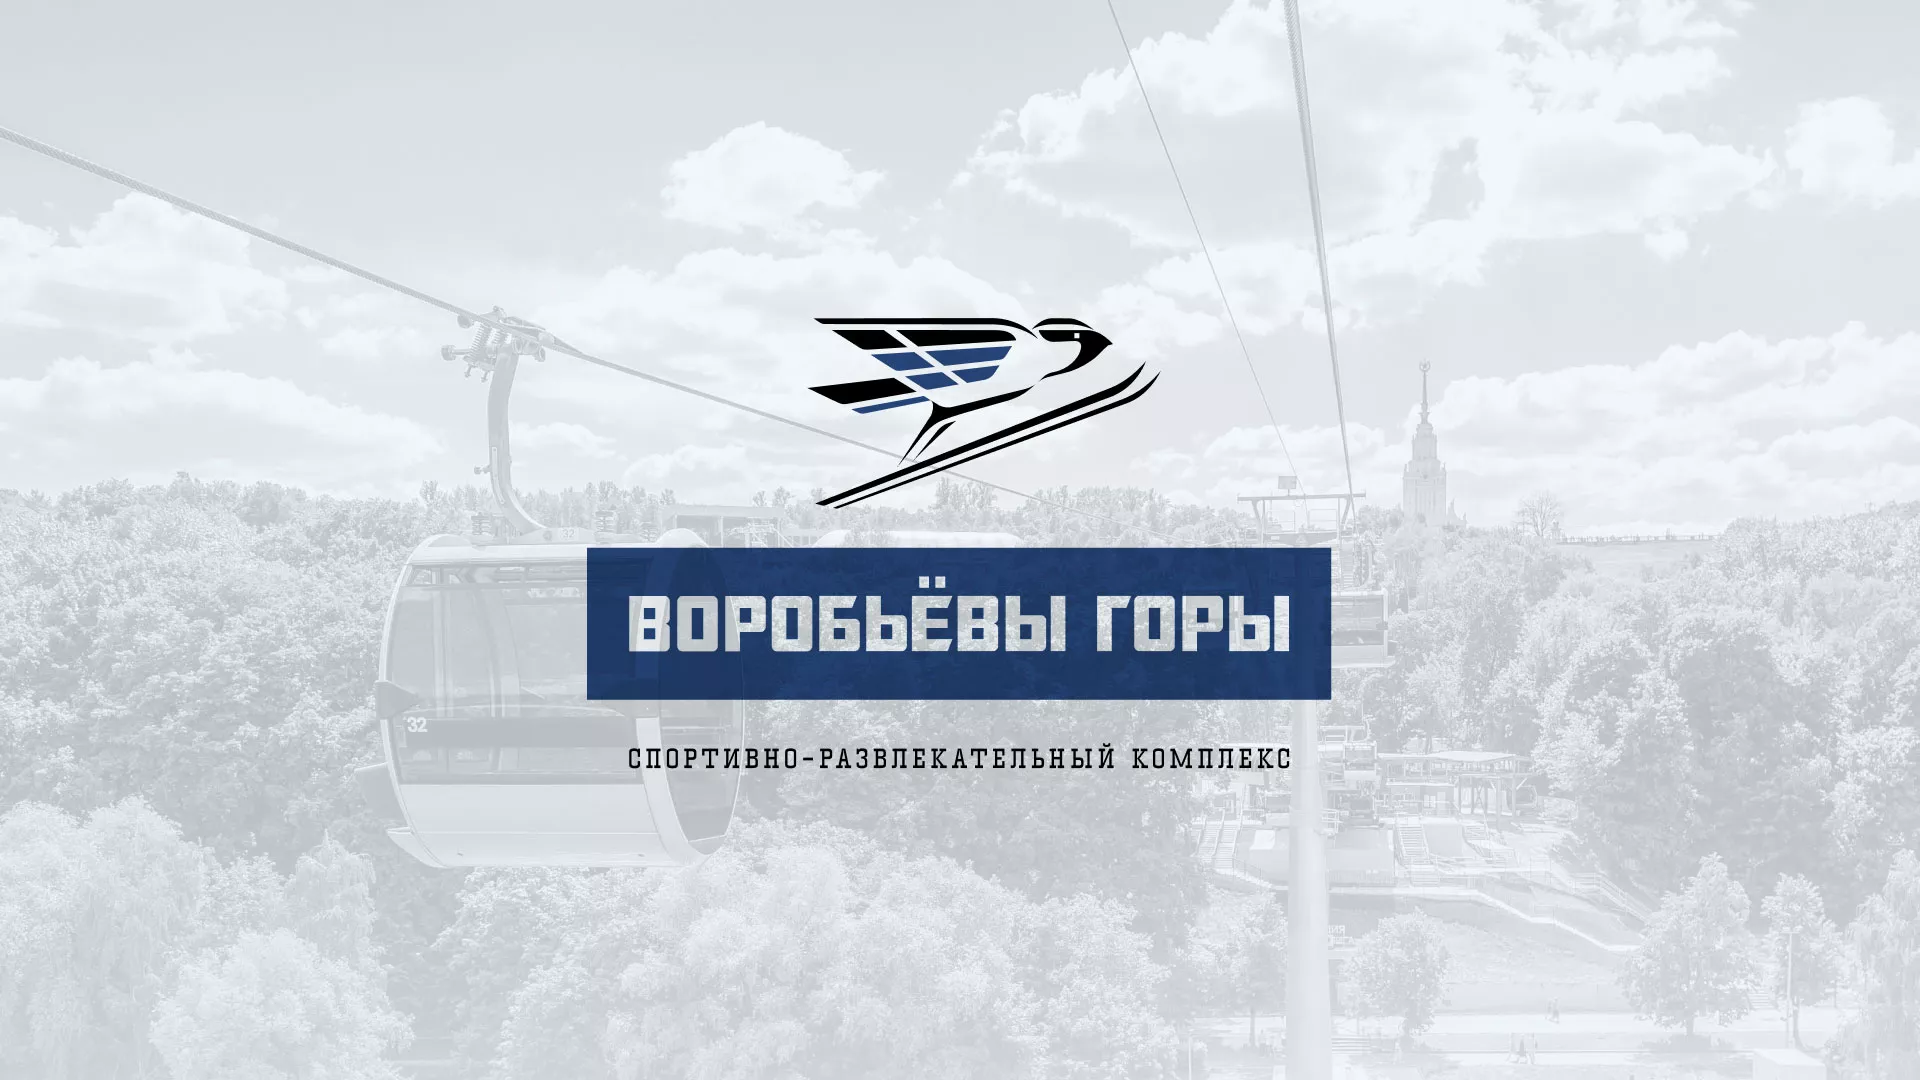 Разработка сайта в Петрове Вале для спортивно-развлекательного комплекса «Воробьёвы горы»